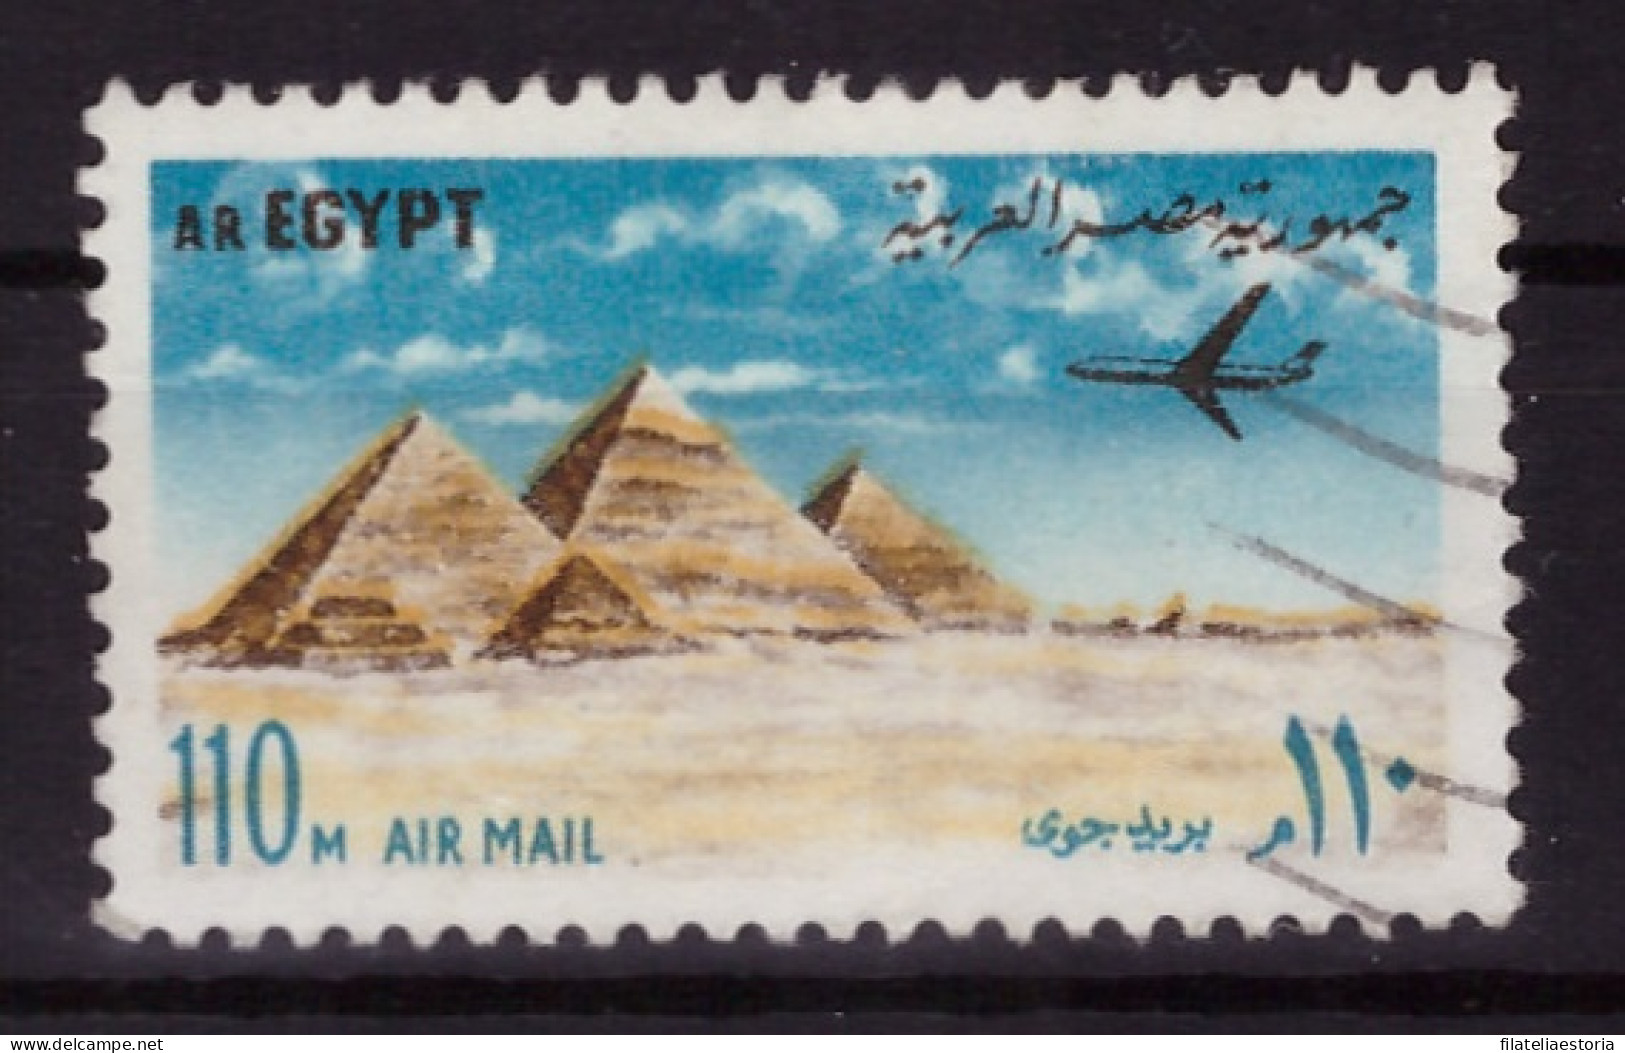 Egypte 1972 - Oblitéré - Monuments - Avions - Michel Nr. 1115 (egy350) - Used Stamps